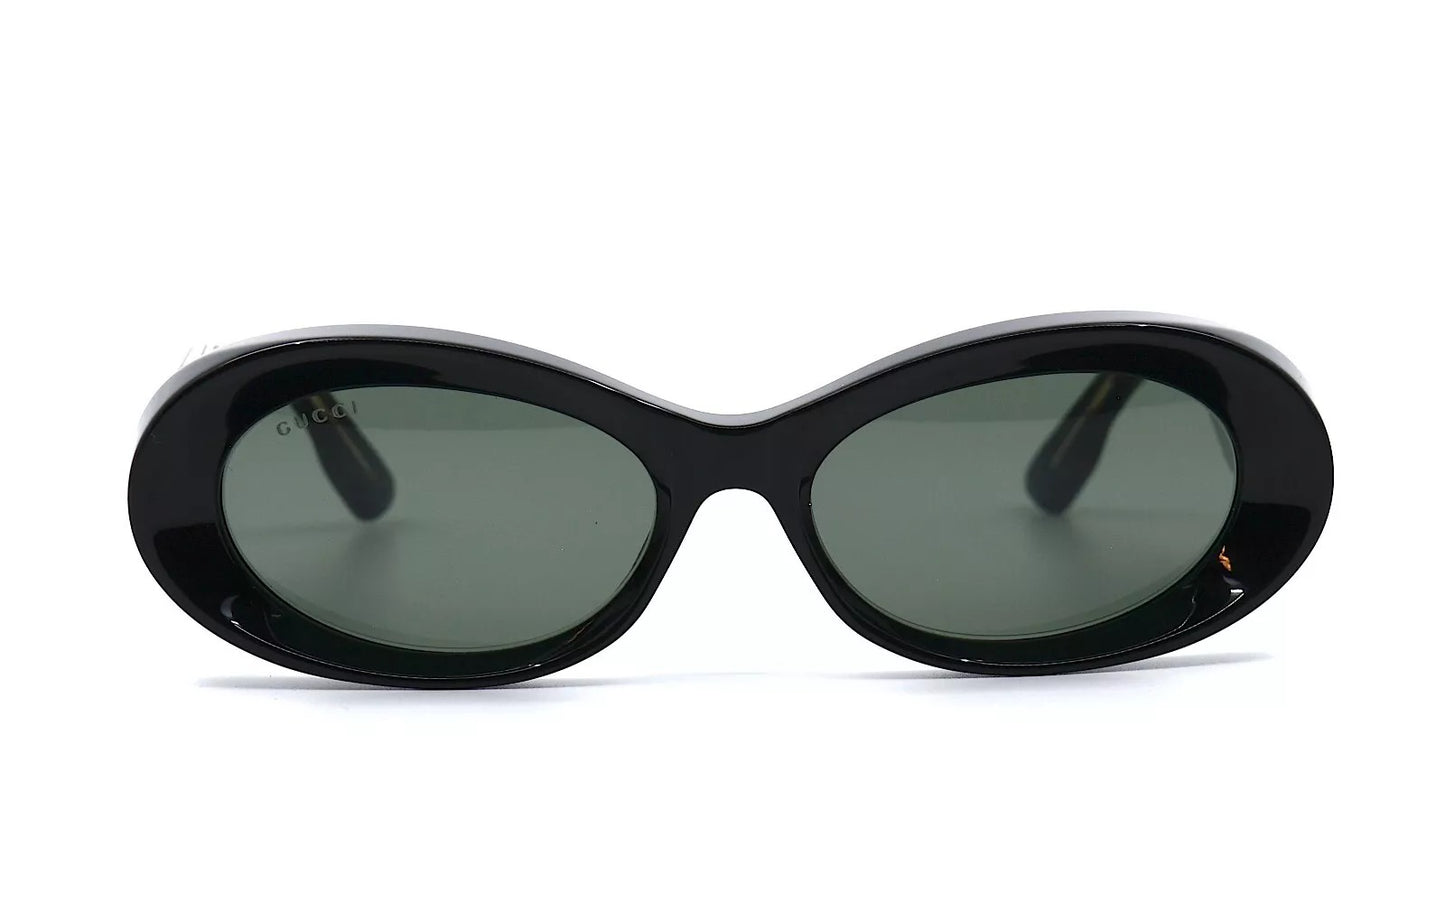 Gucci GG1527S-001 54mm New Sunglasses